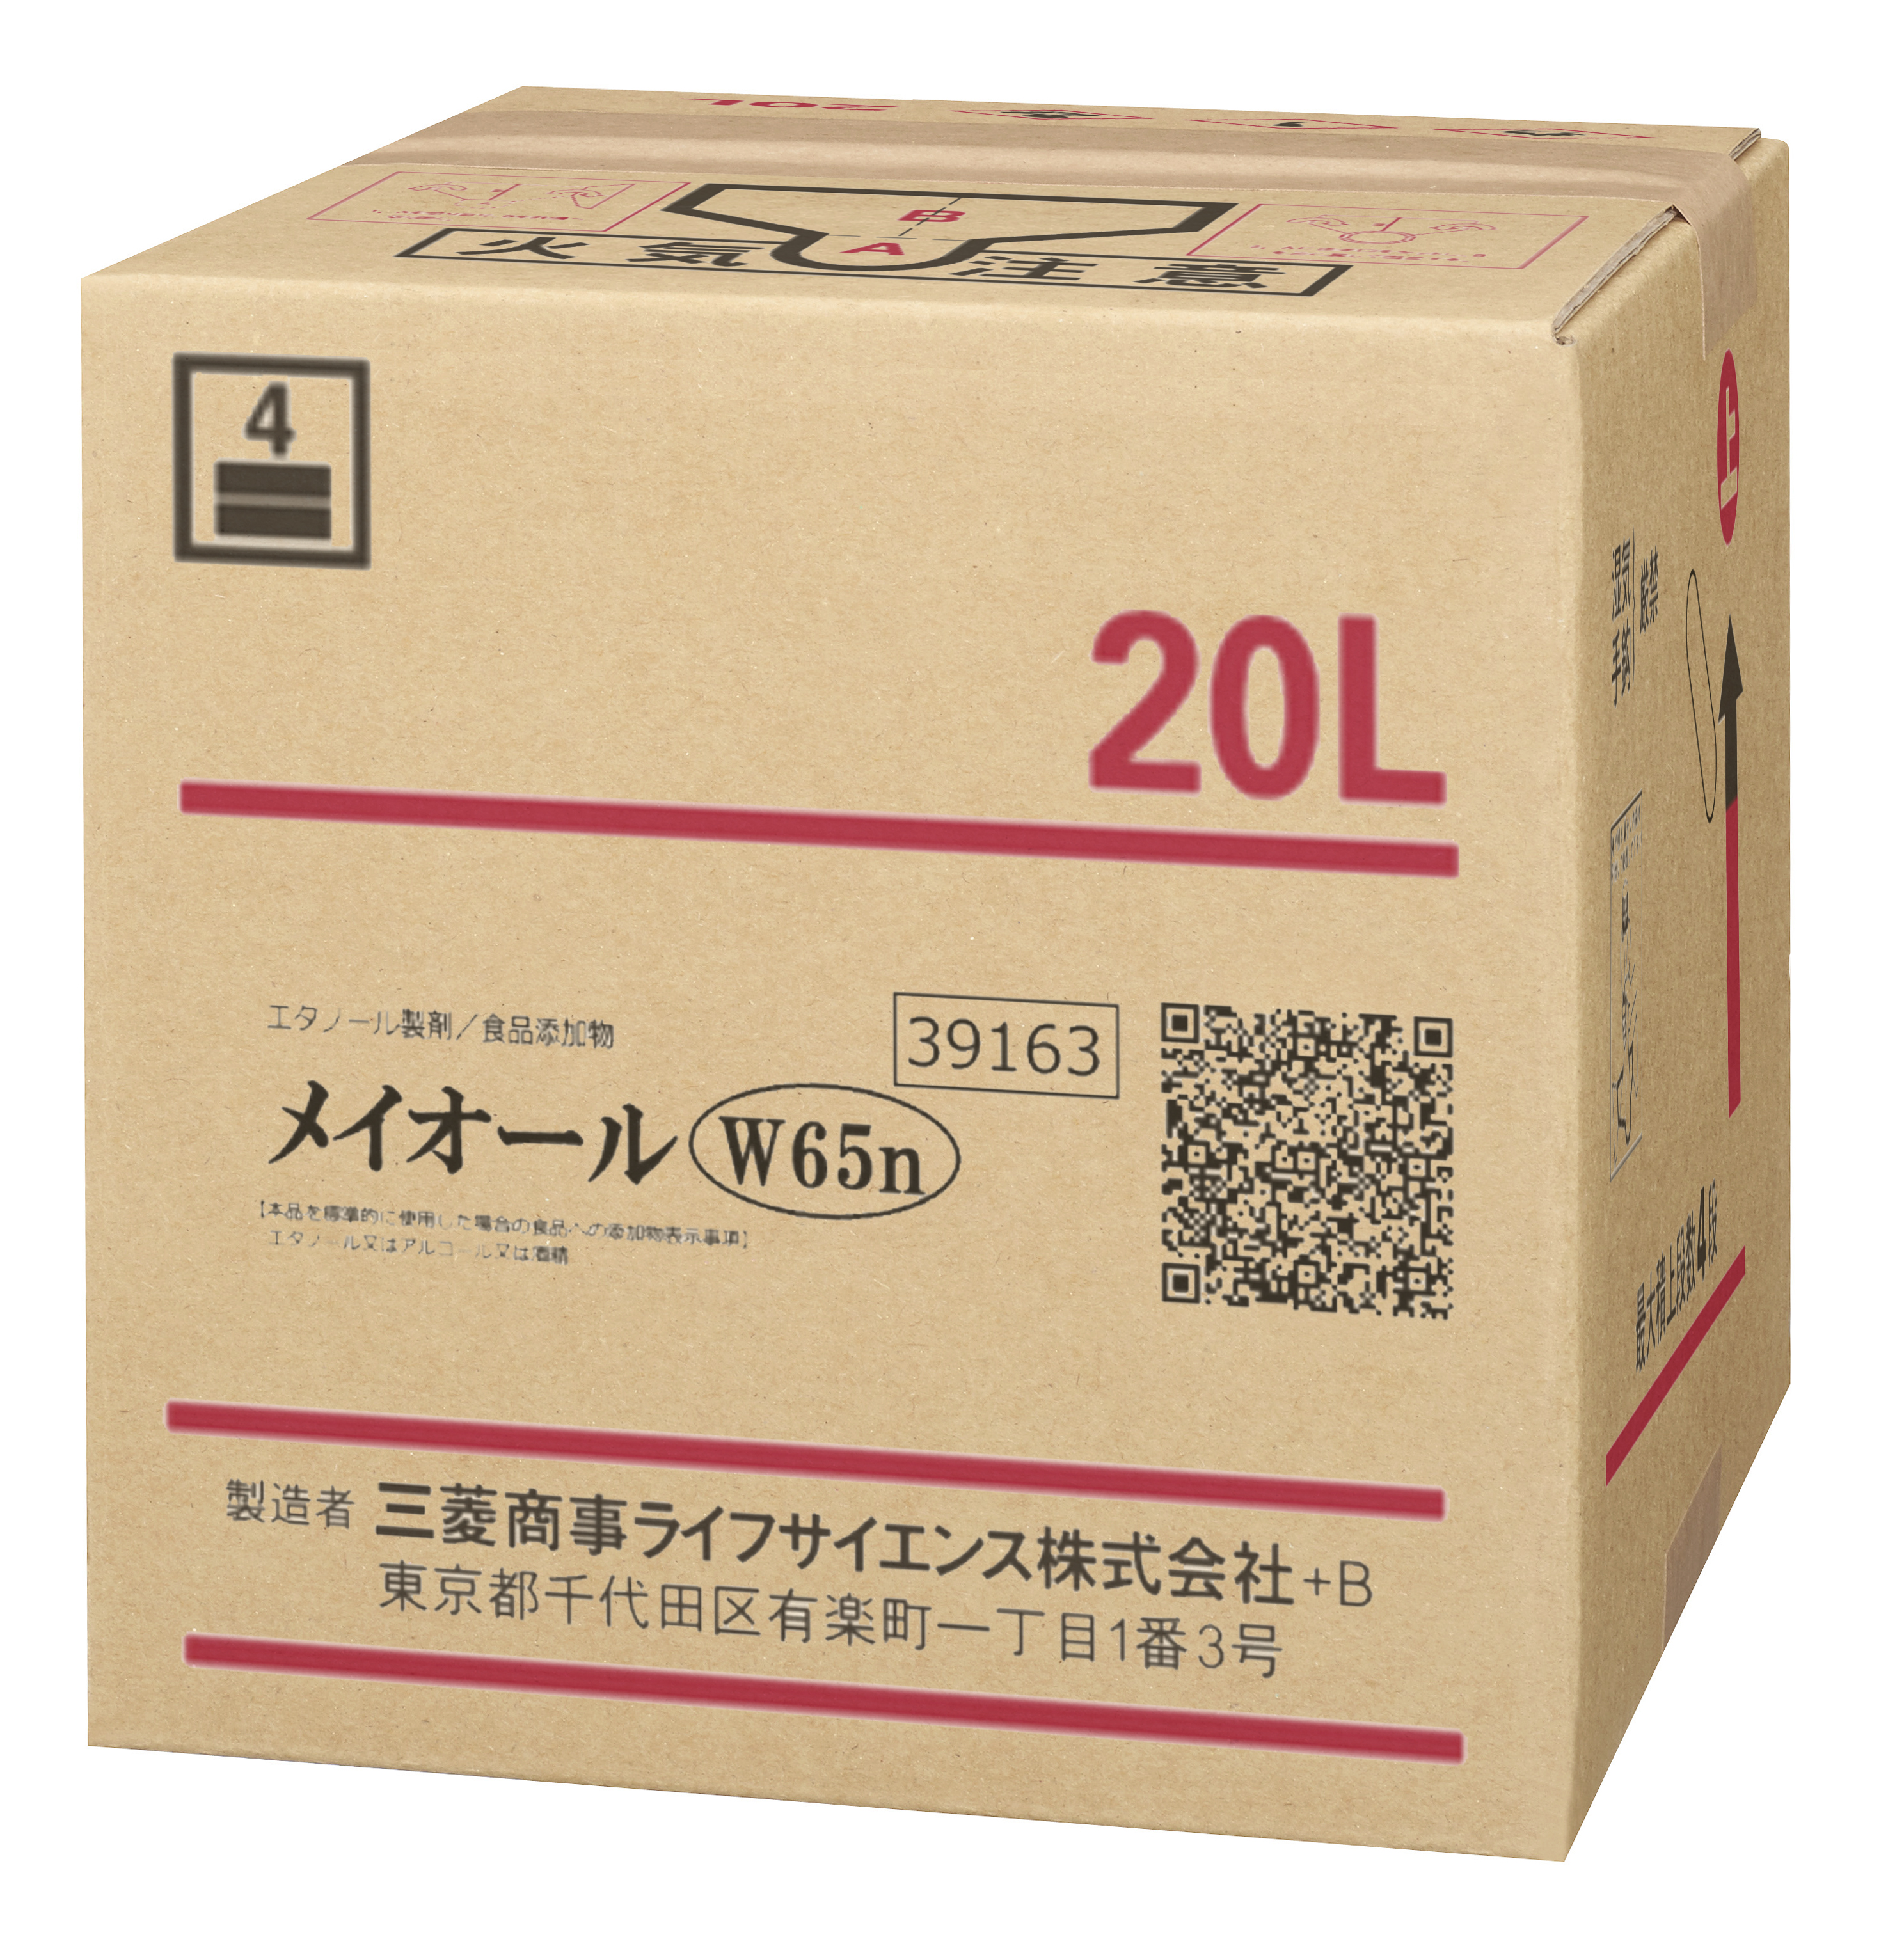 1207円 ランキング上位のプレゼント ミツカン りんご酢20Lキュービーテナー×1本